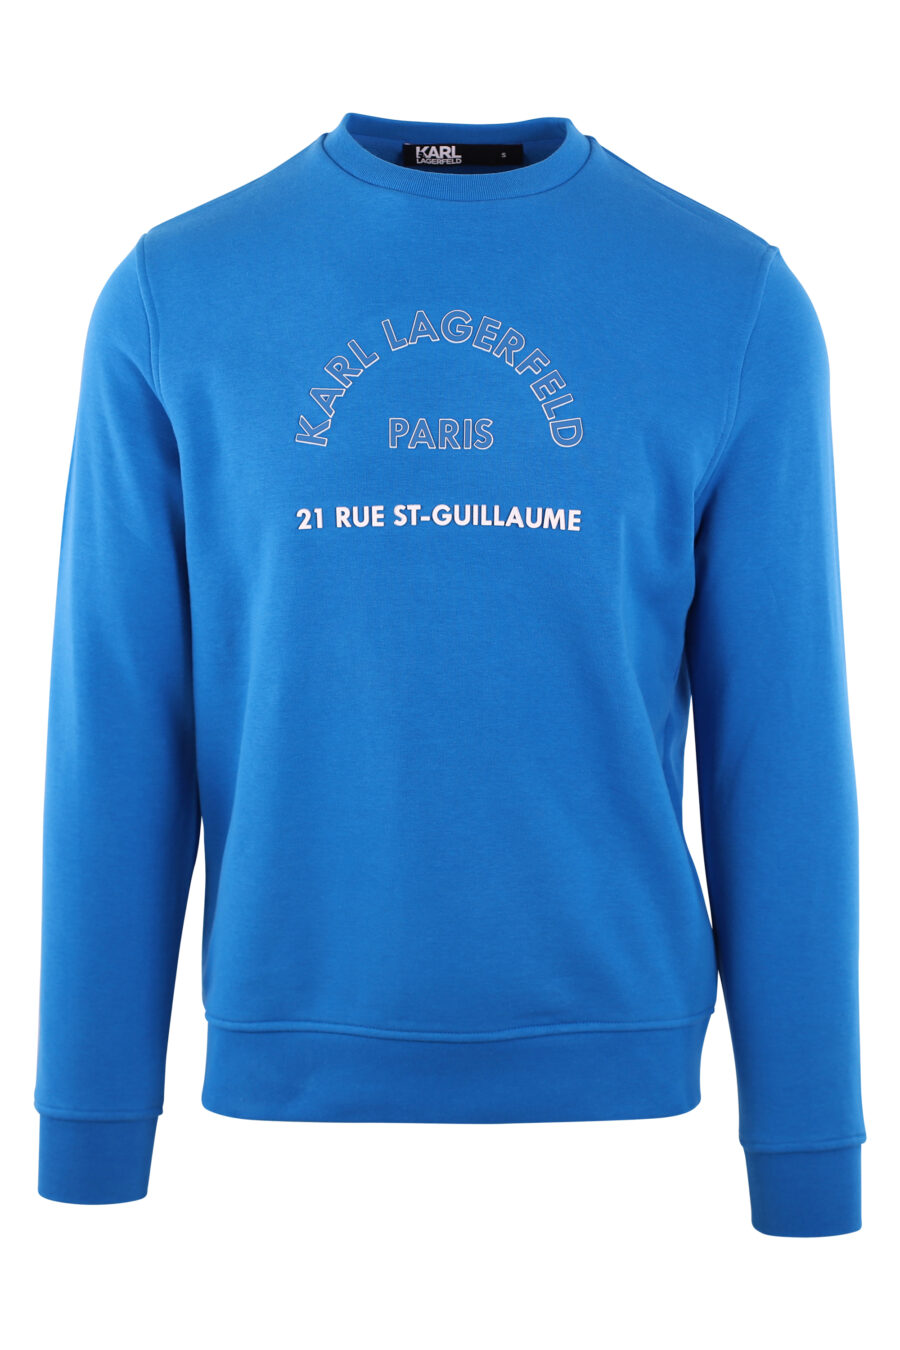 Sweat bleu avec logo "rue st-guillaume" - IMG 2840